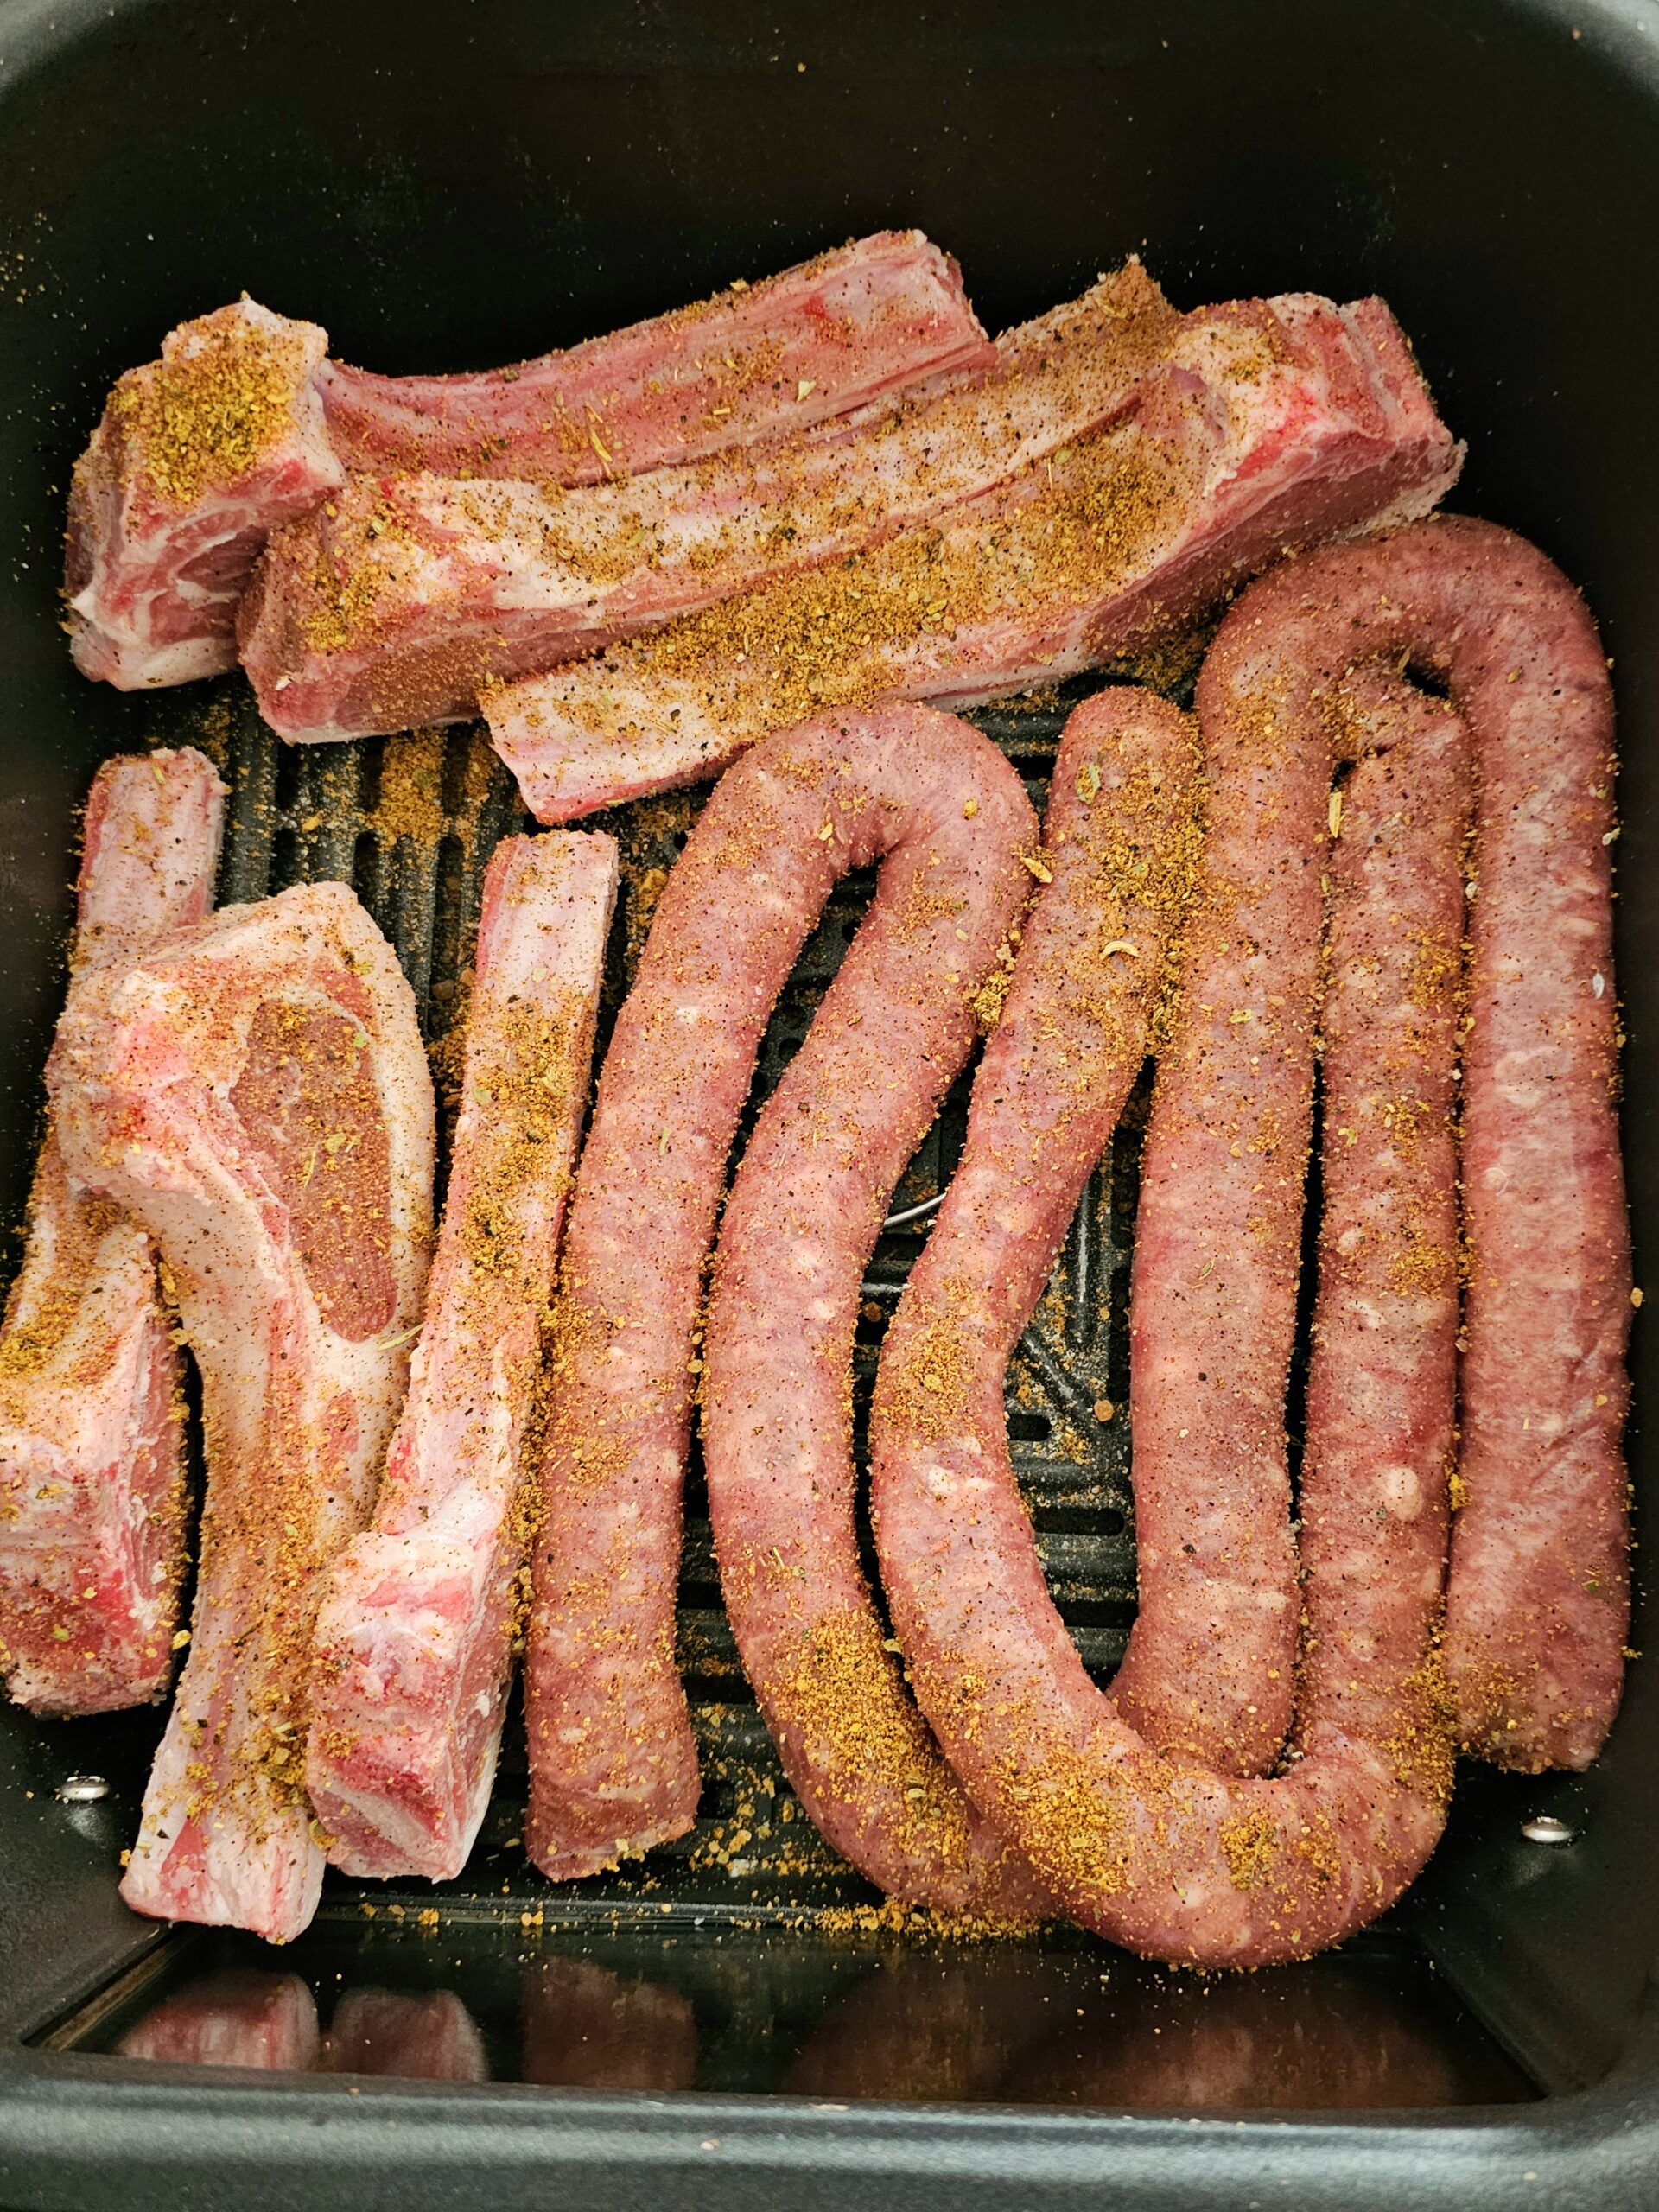 lamb and sausage air fryer recipe